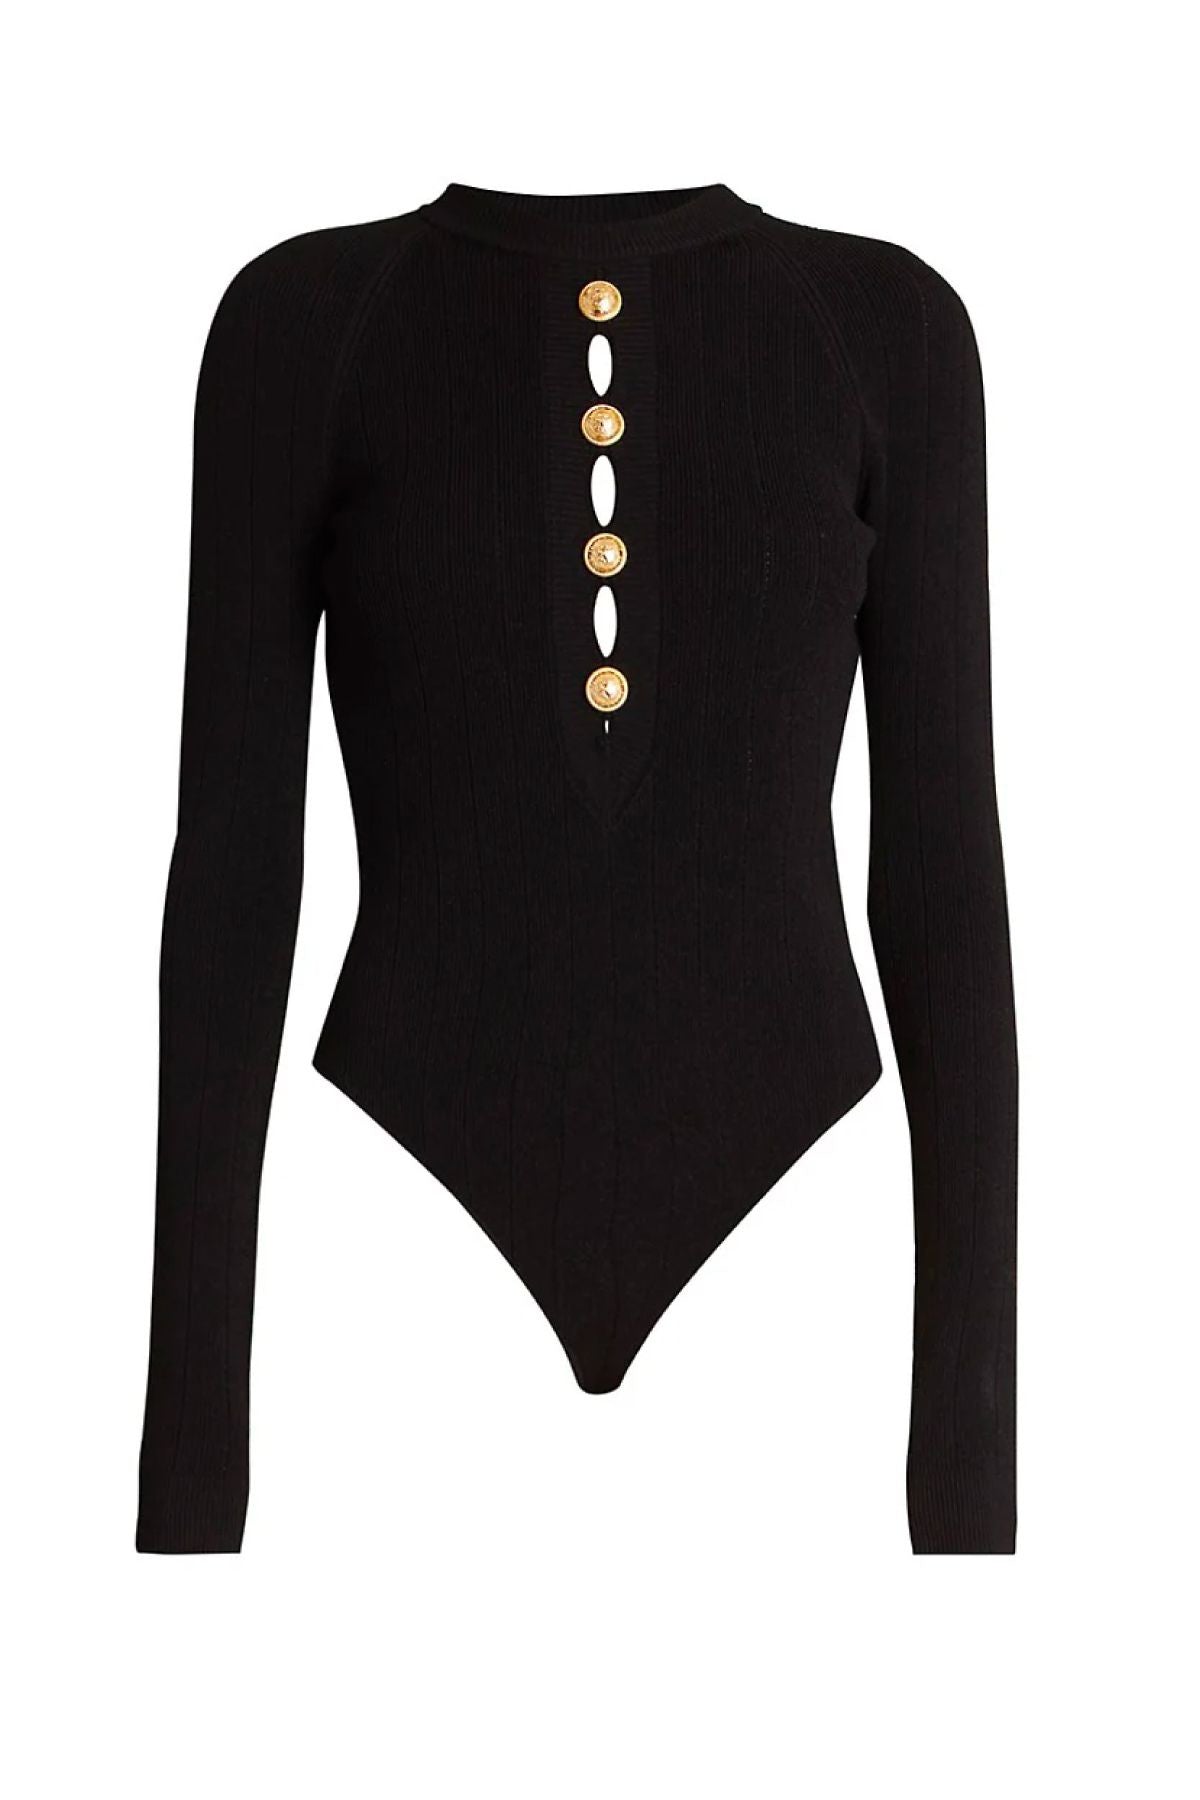 Balmain Buttoned Halter Bodysuit - Black